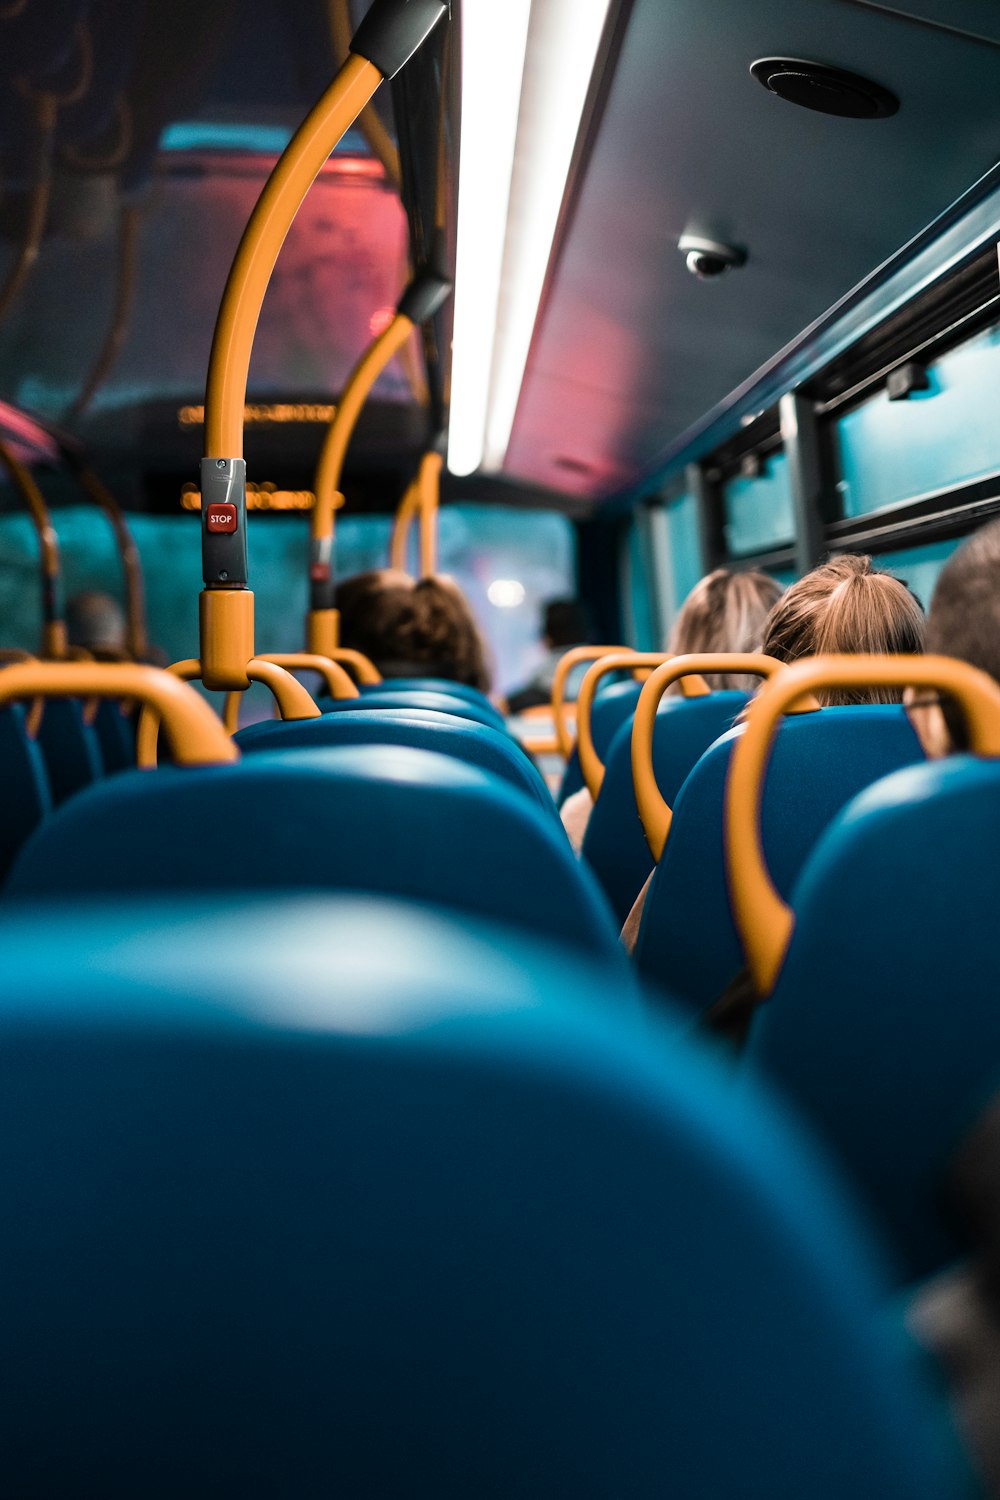 파란색과 노란색 버스 좌석에 앉아있는 사람들